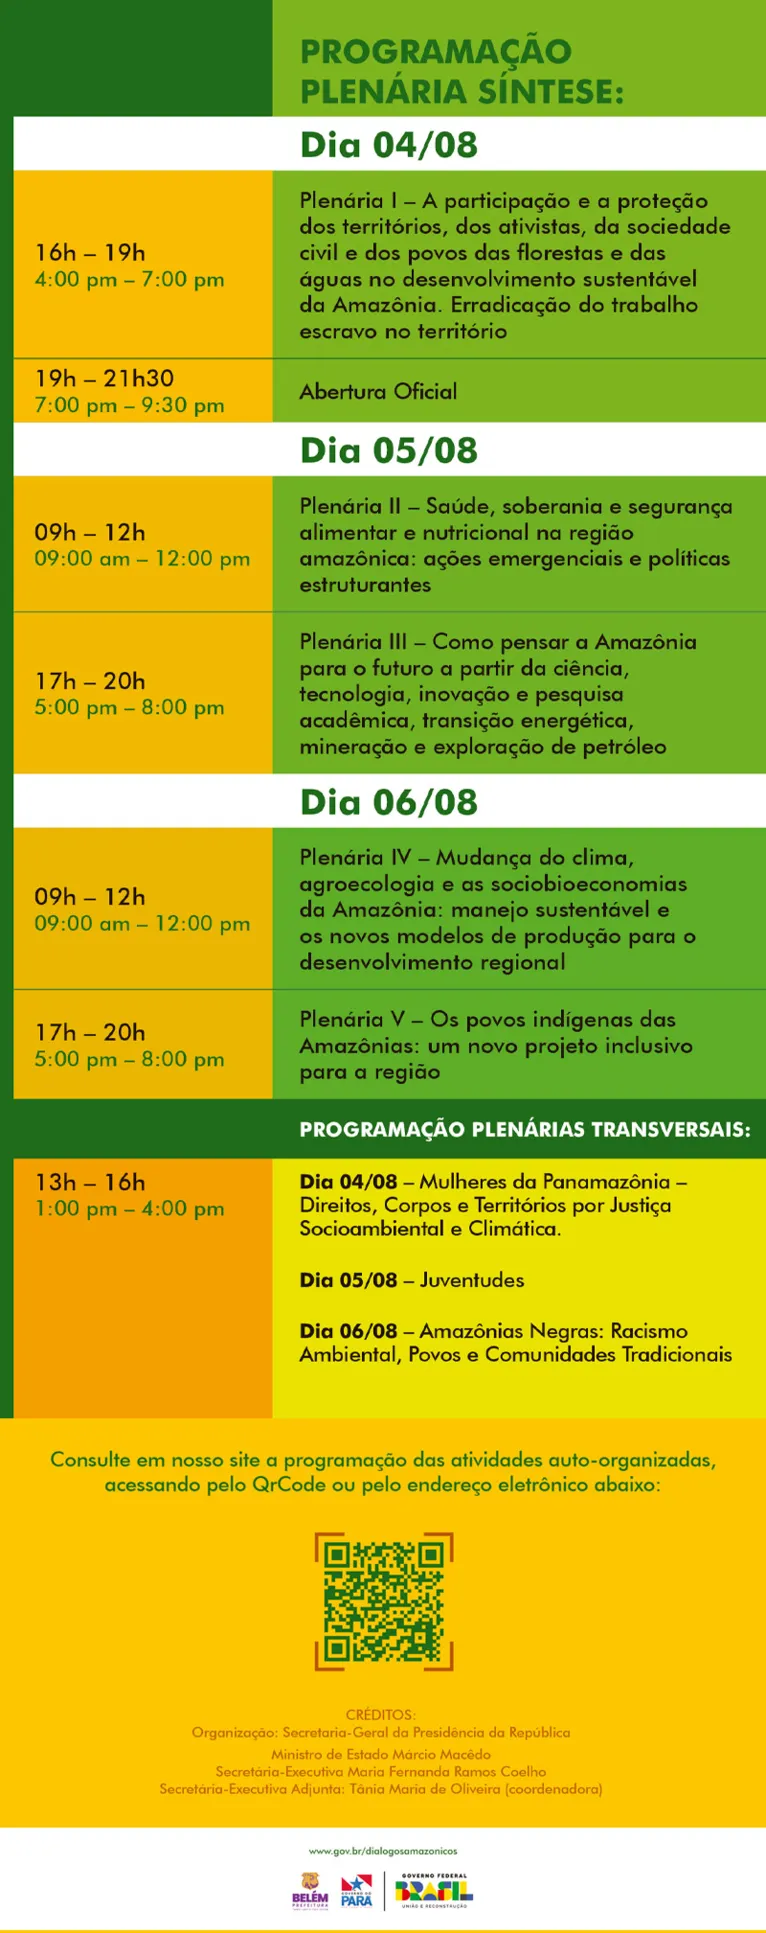 Veja a programação completa do encontro Diálogos Amazônicos